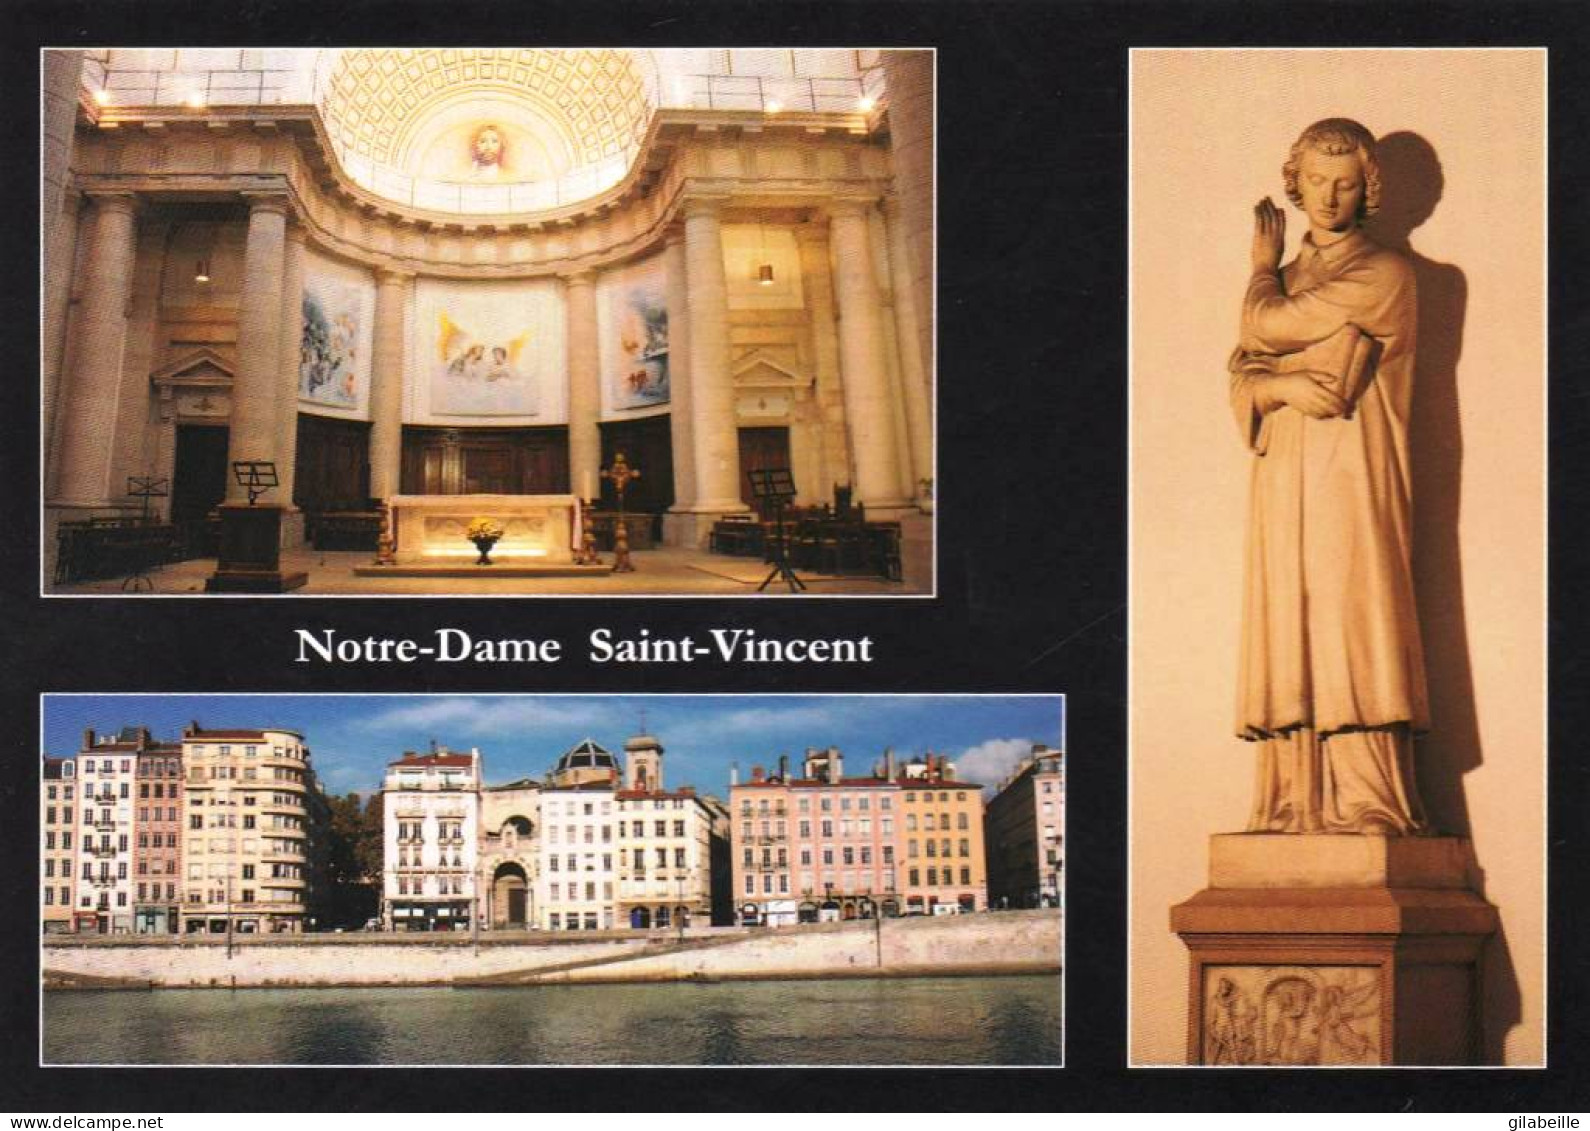 69 - LYON - Eglise Notre Dame Saint Vincent - Le Choeur - Vue De La Saone- Statue De Saint Vincent - Lyon 1